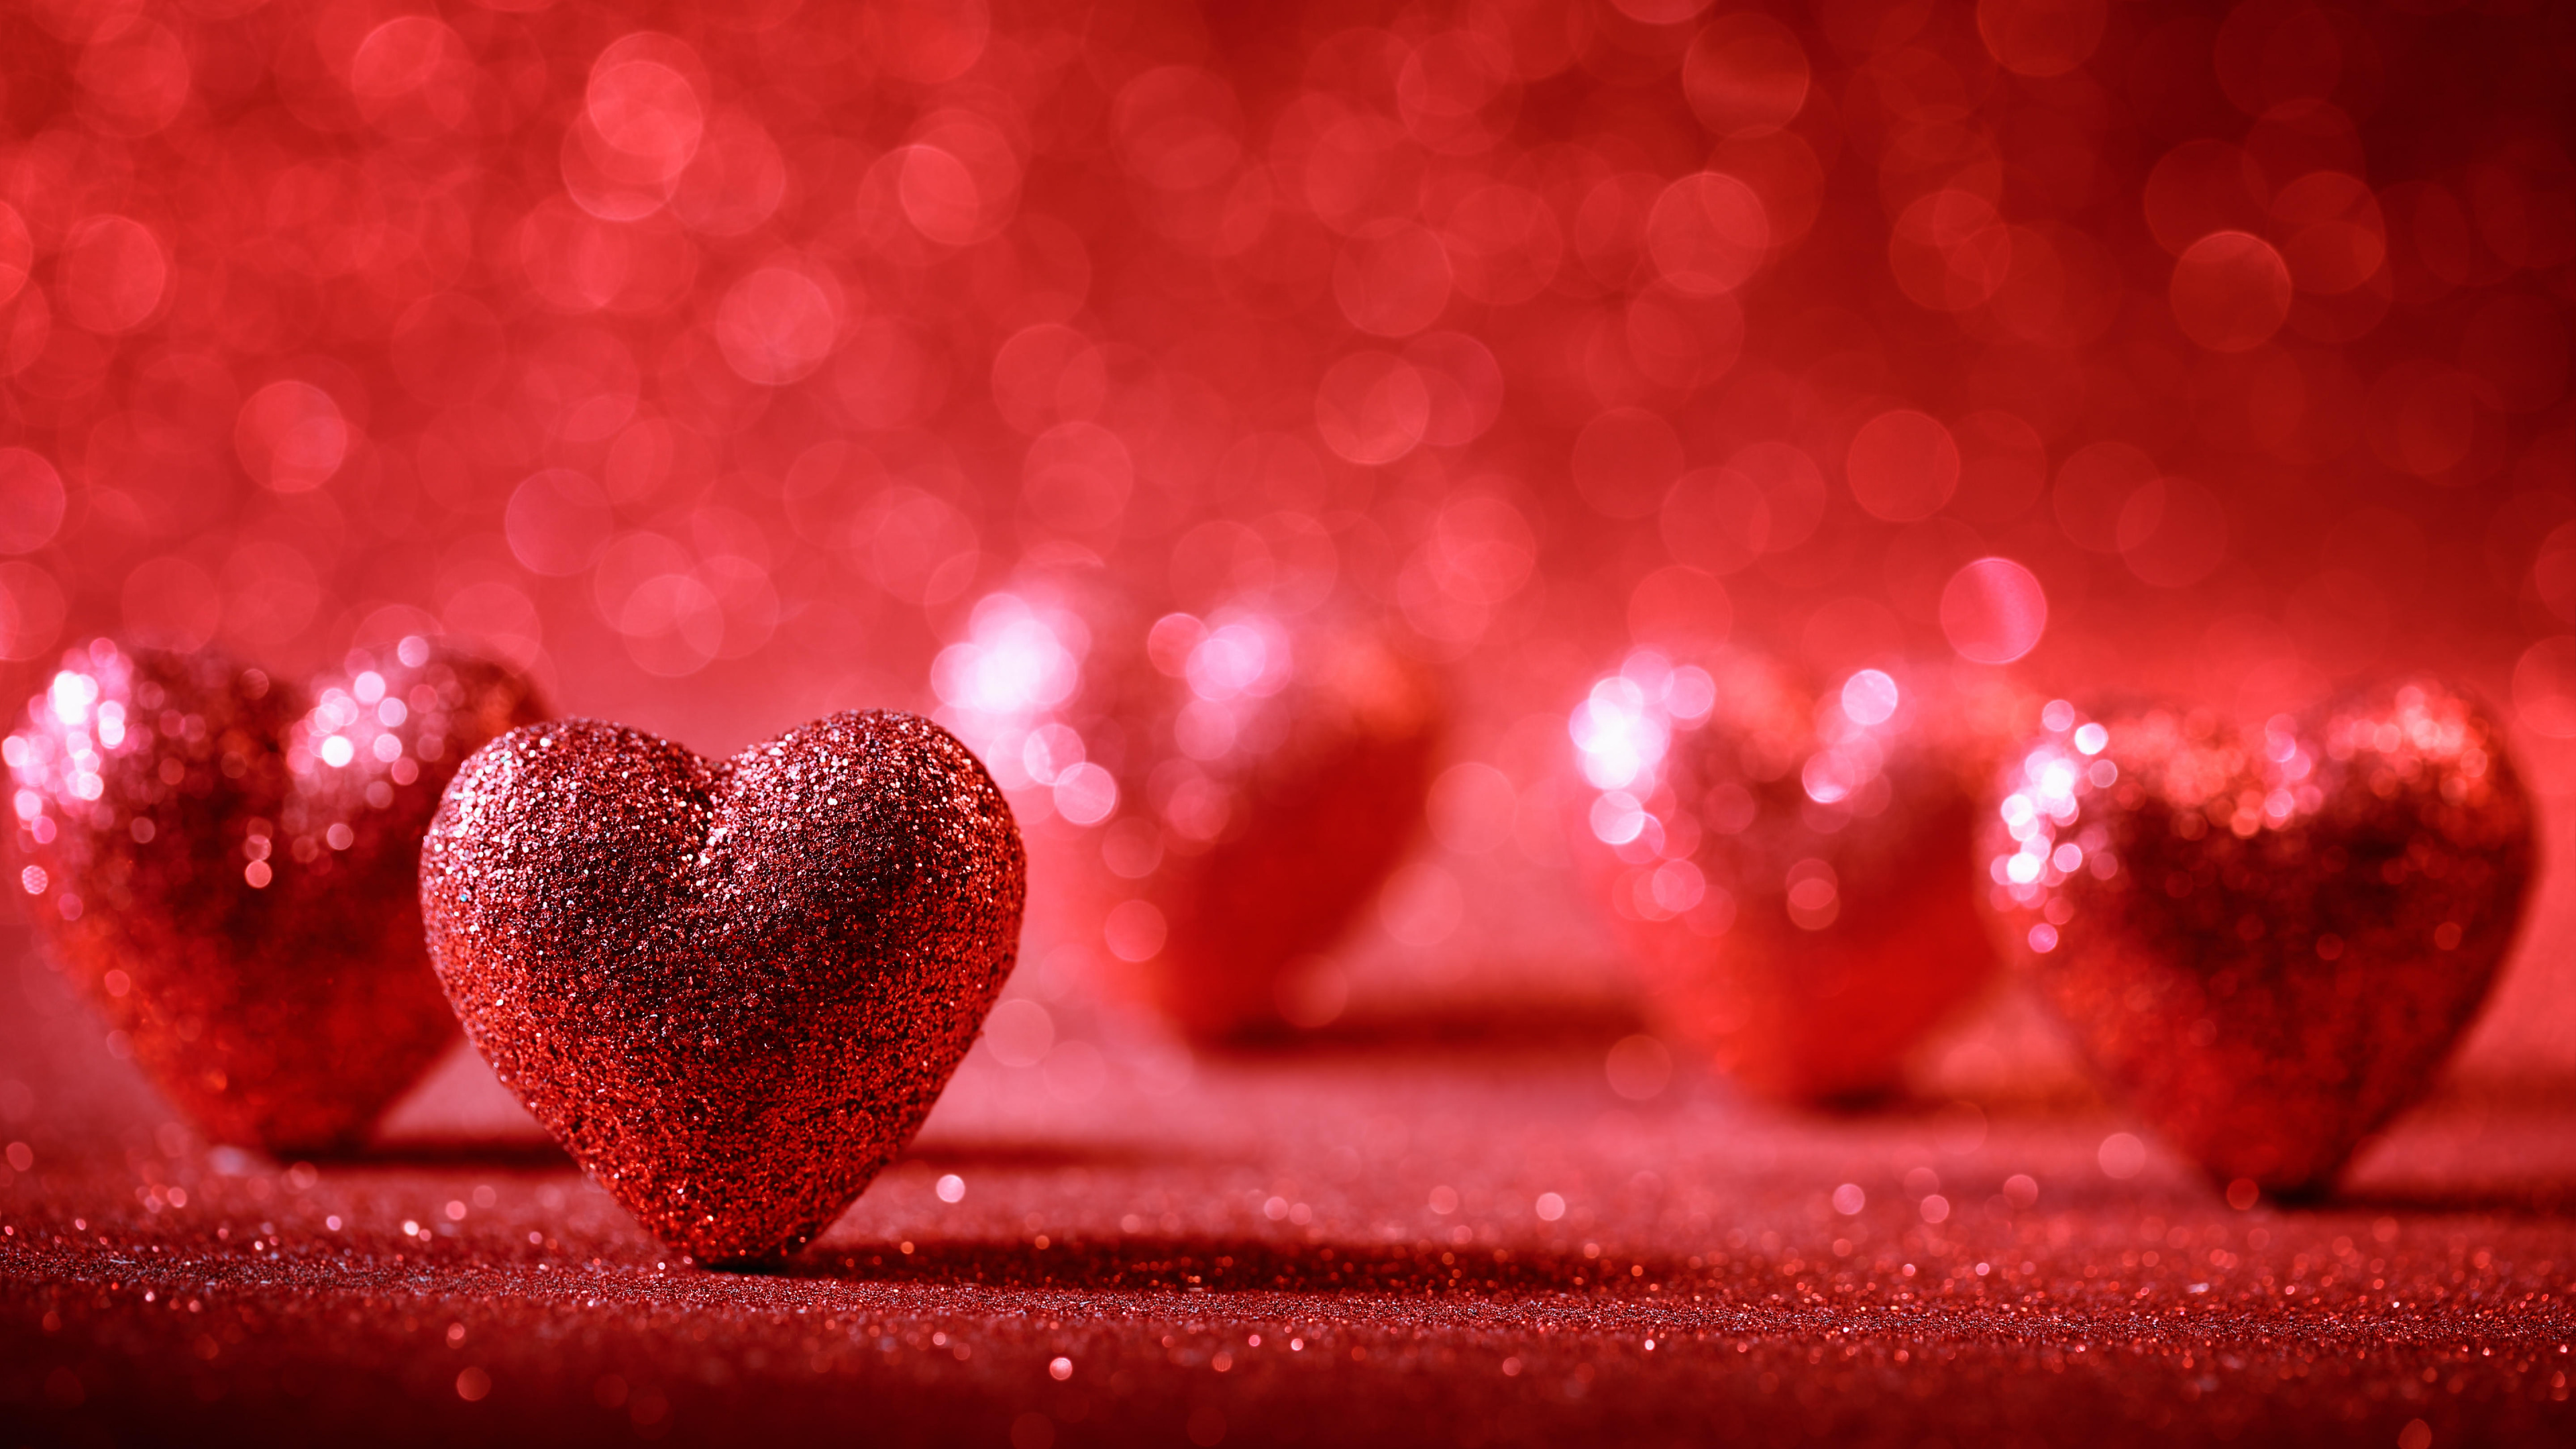 el Día de San Valentín, Coraz, Rojo, Amor, Romanticismo. Wallpaper in 3840x2160 Resolution